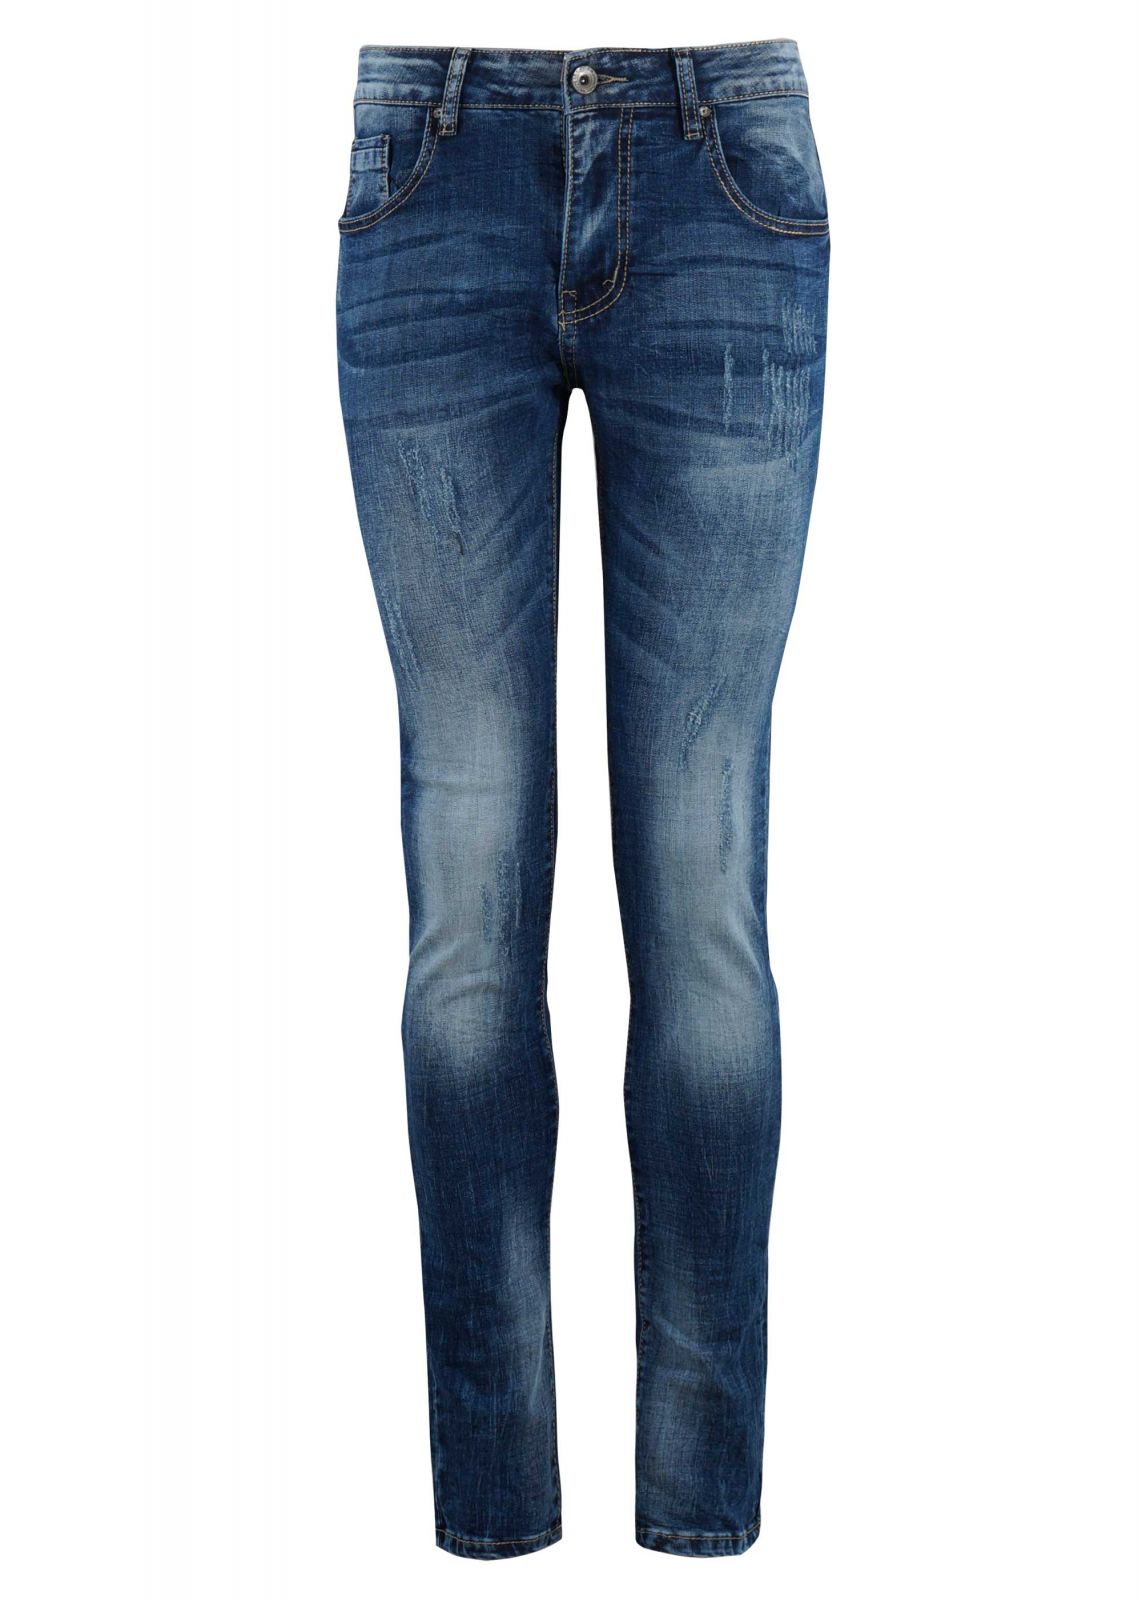 Αντρικό παντελόνι jean ελαστικό ξεβάμματα skinny γραμμή.